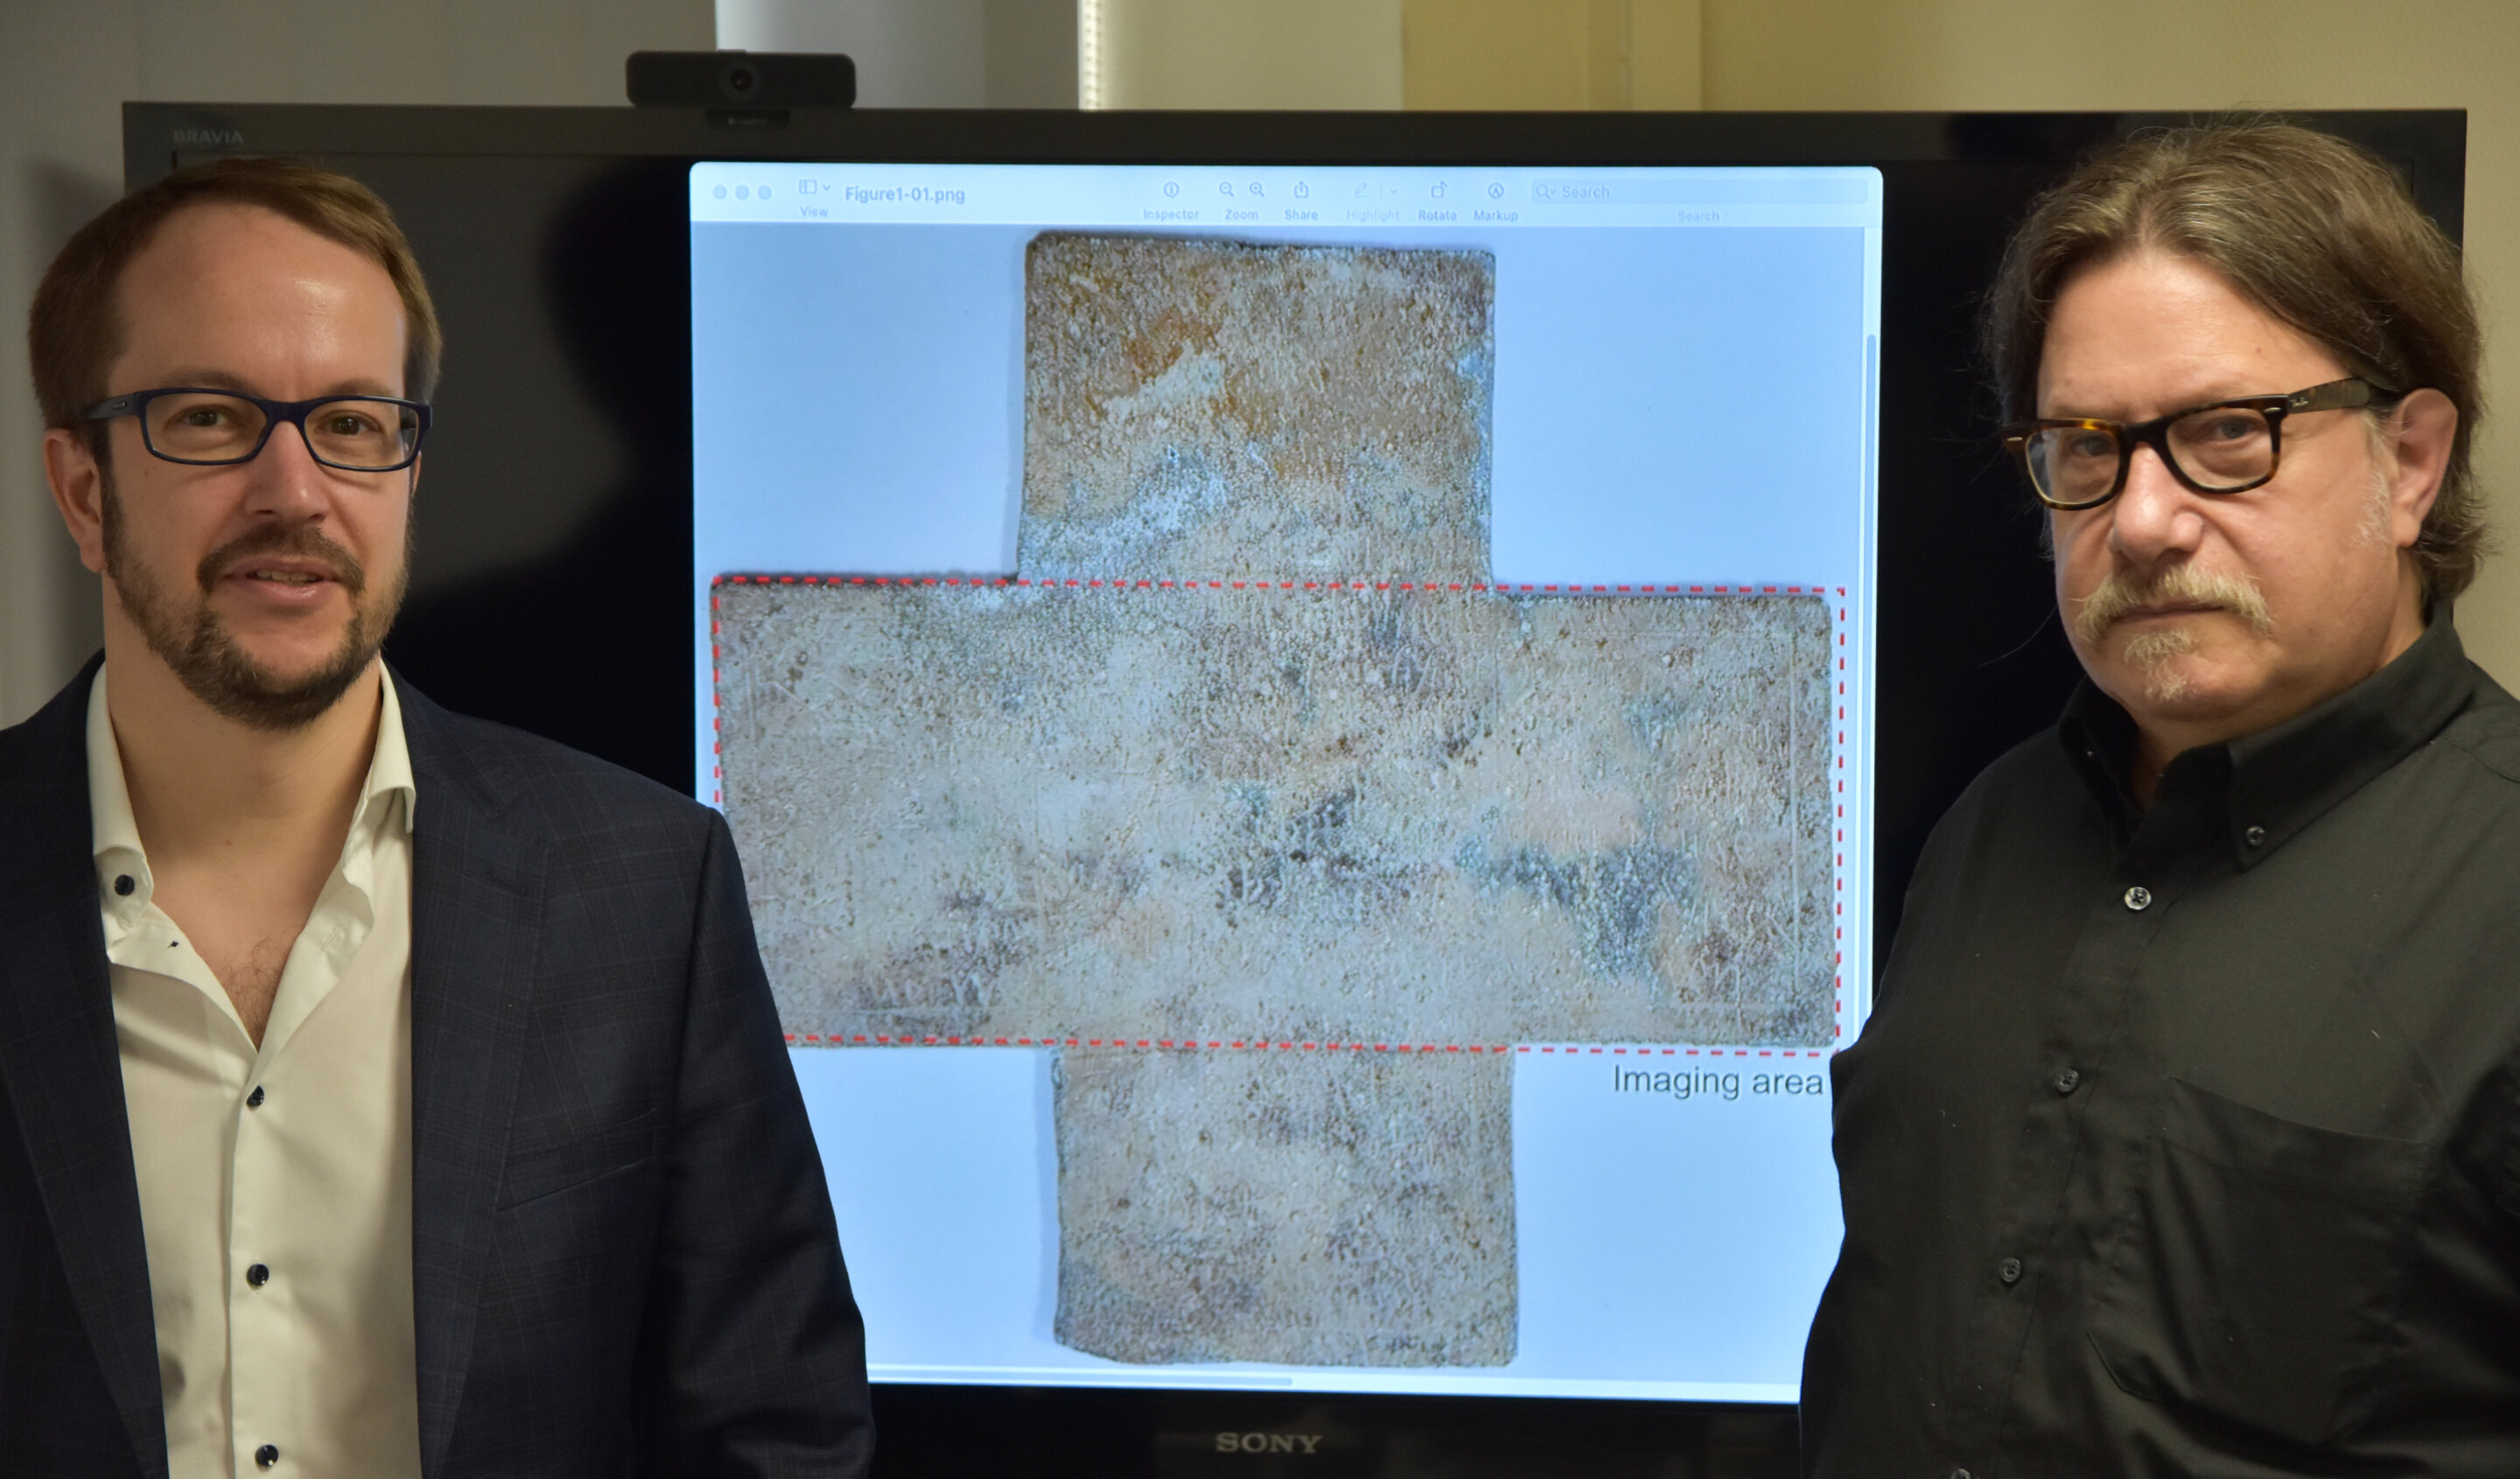 L’imagerie térahertz révèle une inscription cachée sur une croix funéraire moderne